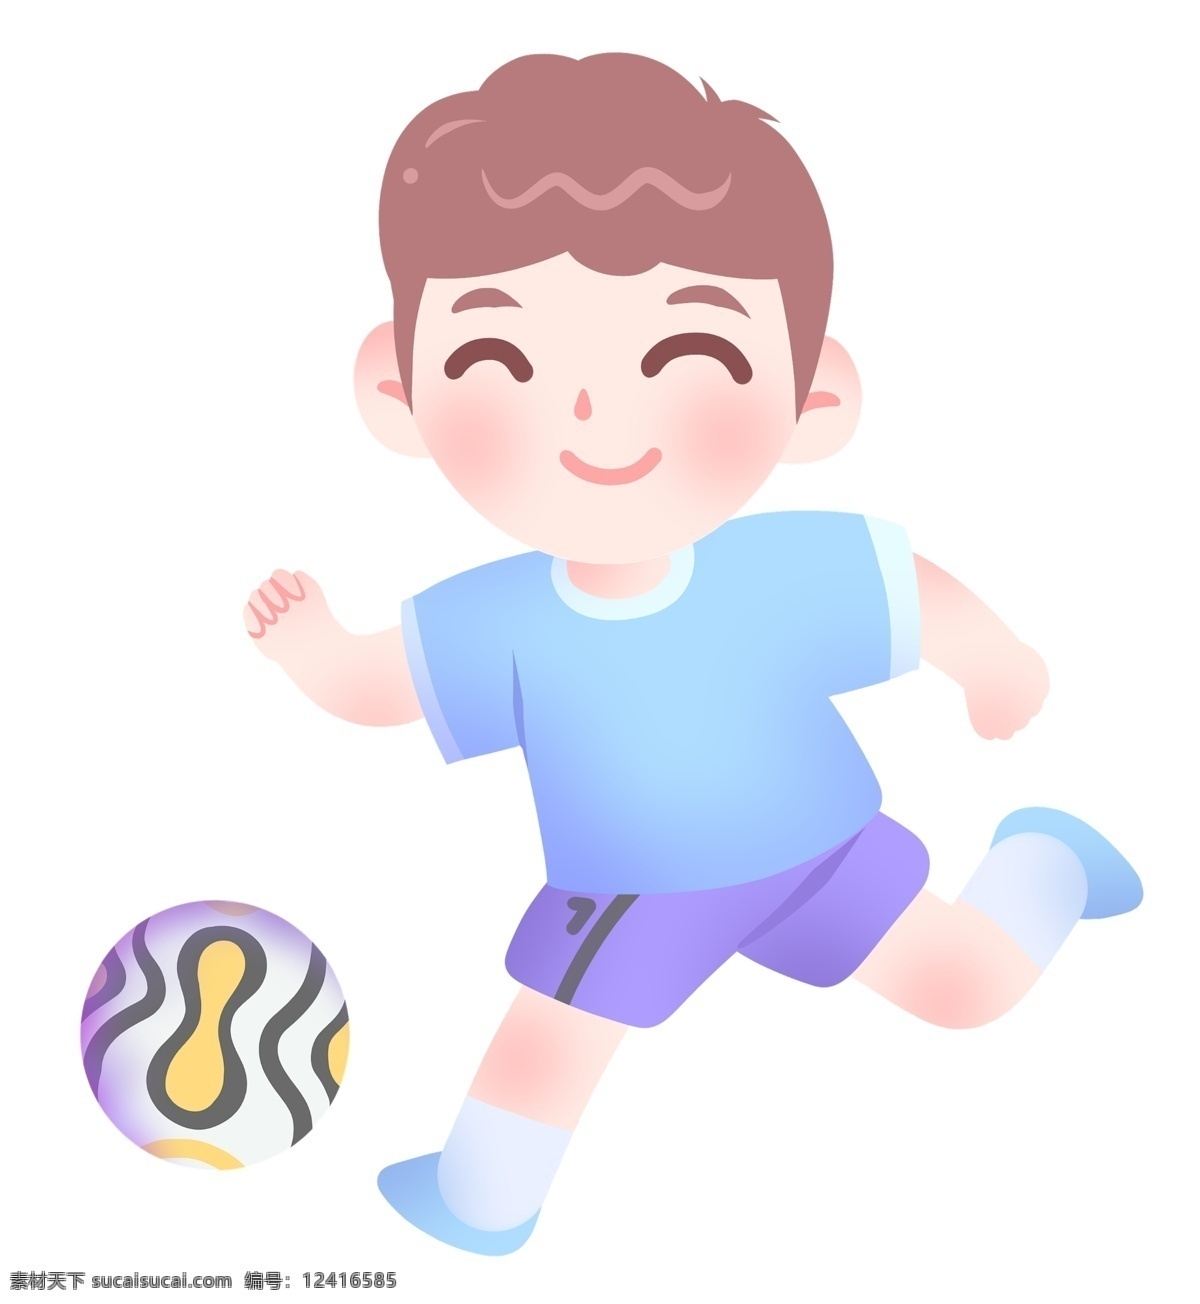 足球 人物 装饰 插画 足球人物插画 运动健身插画 踢 小 男孩 圆形足球 卡通人物 健身的小男孩